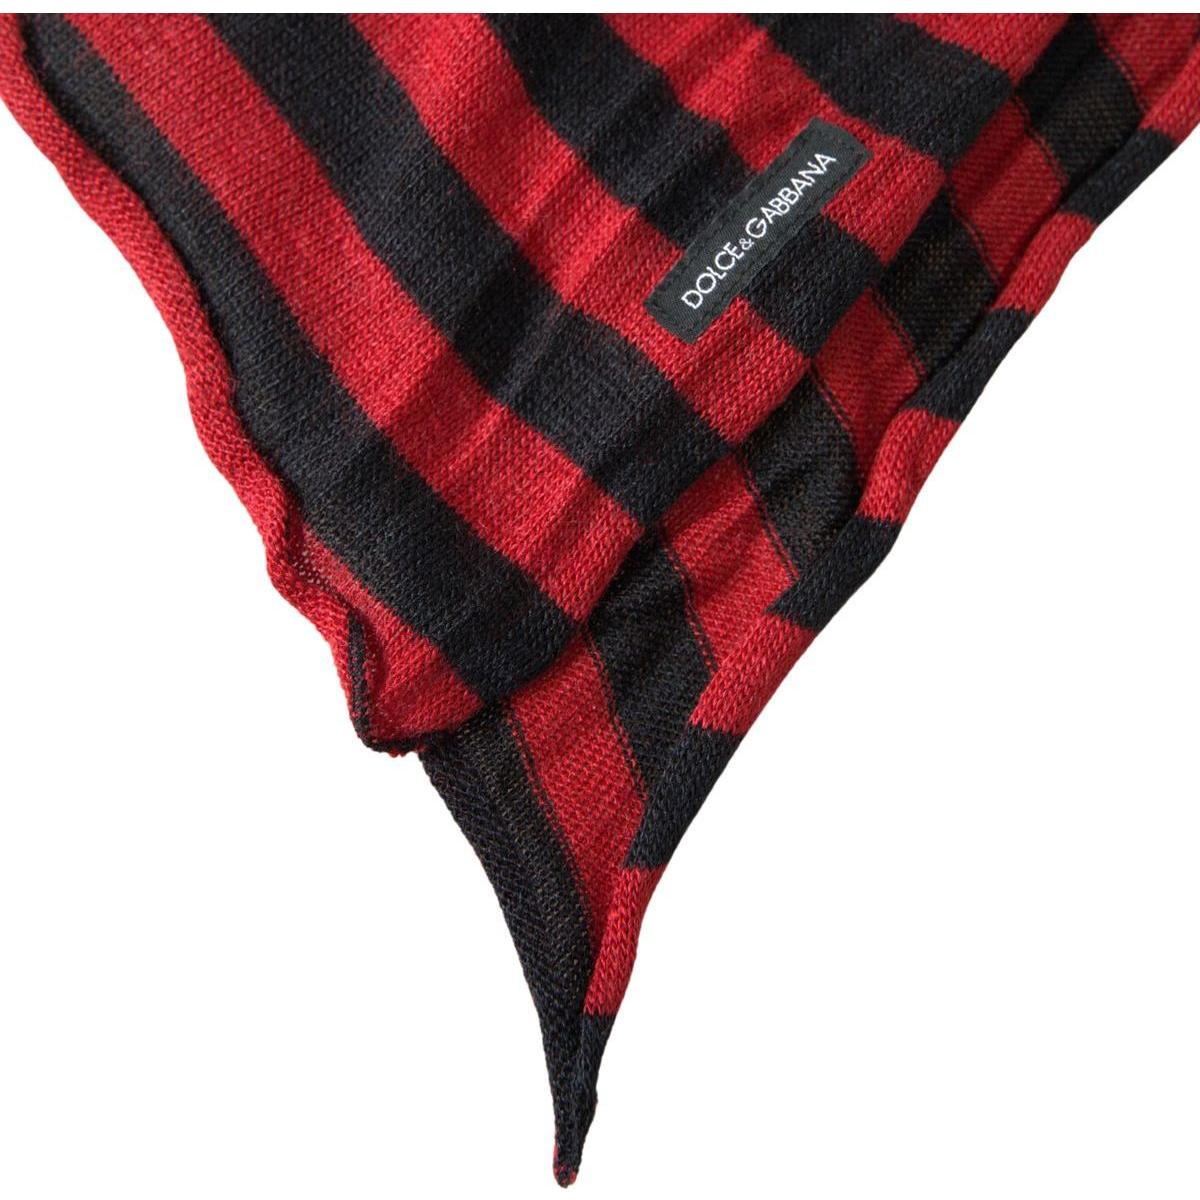 Dolce & Gabbana Elegant Striped Acrylic Wool Silk Scarf red-black-stripes-acrylic-wrap-shawl-scarf